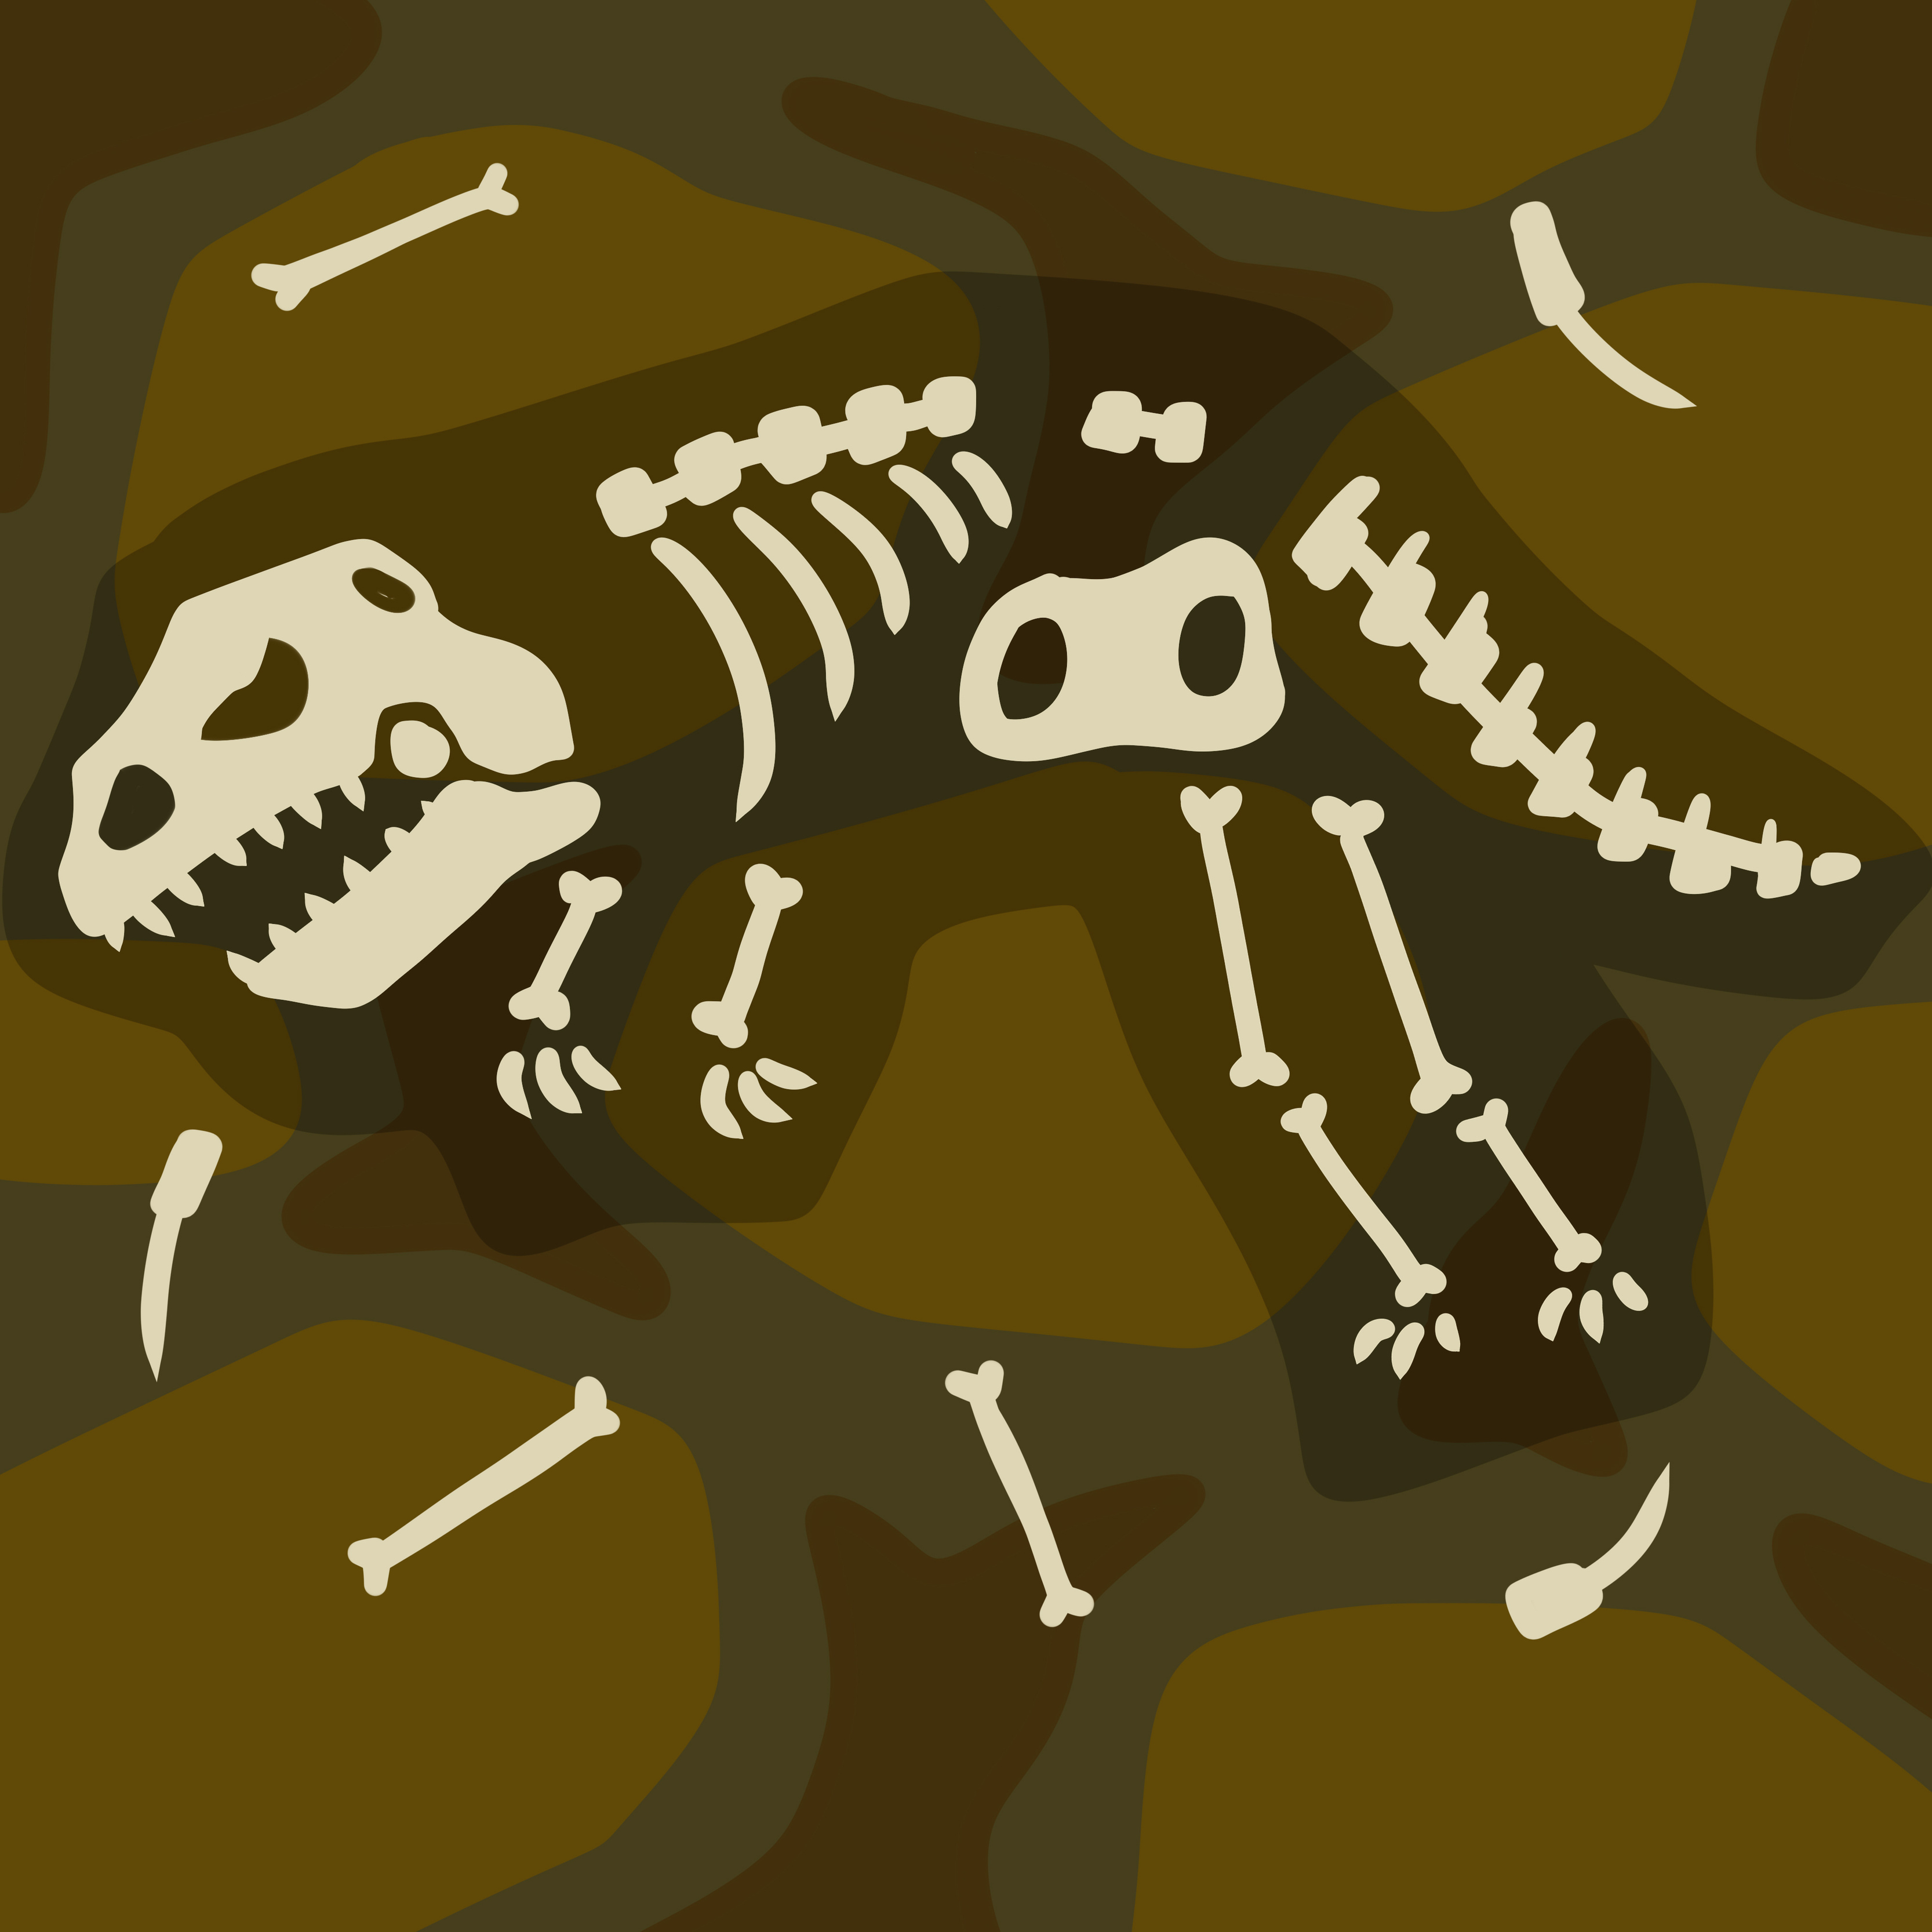 Esqueleto Fóssil De Dinossauro, Estilo De Desenho Animado Ilustração De  Vetor Plano Isolada Em Fundo Branco Ilustração do Vetor - Ilustração de  arqueologia, museu: 170261649